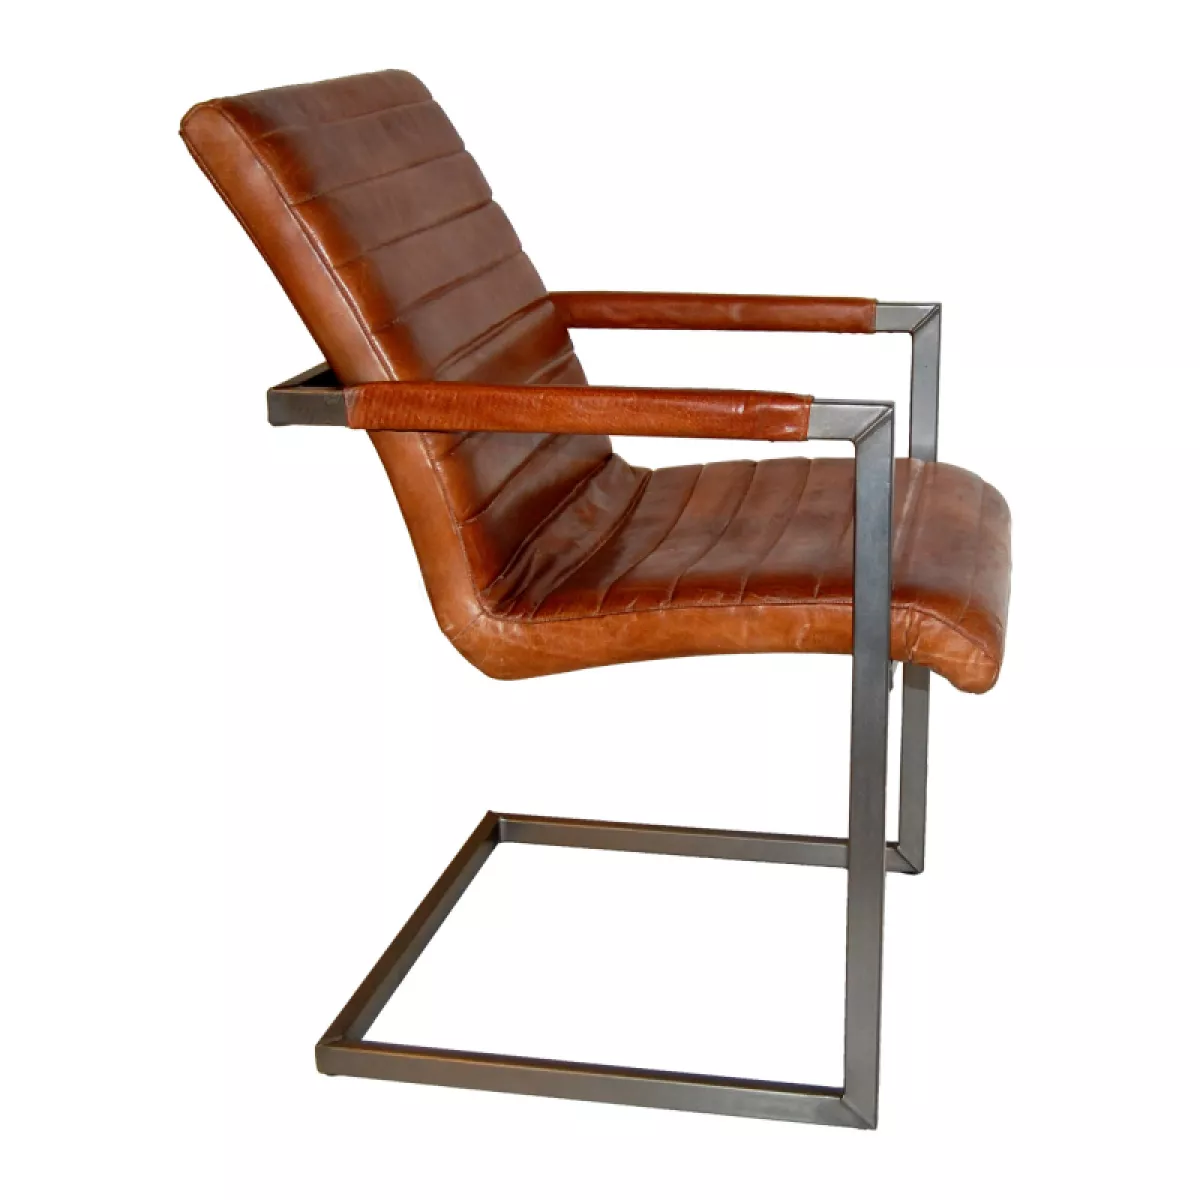 #1 - Mamut cool stol med armlæn